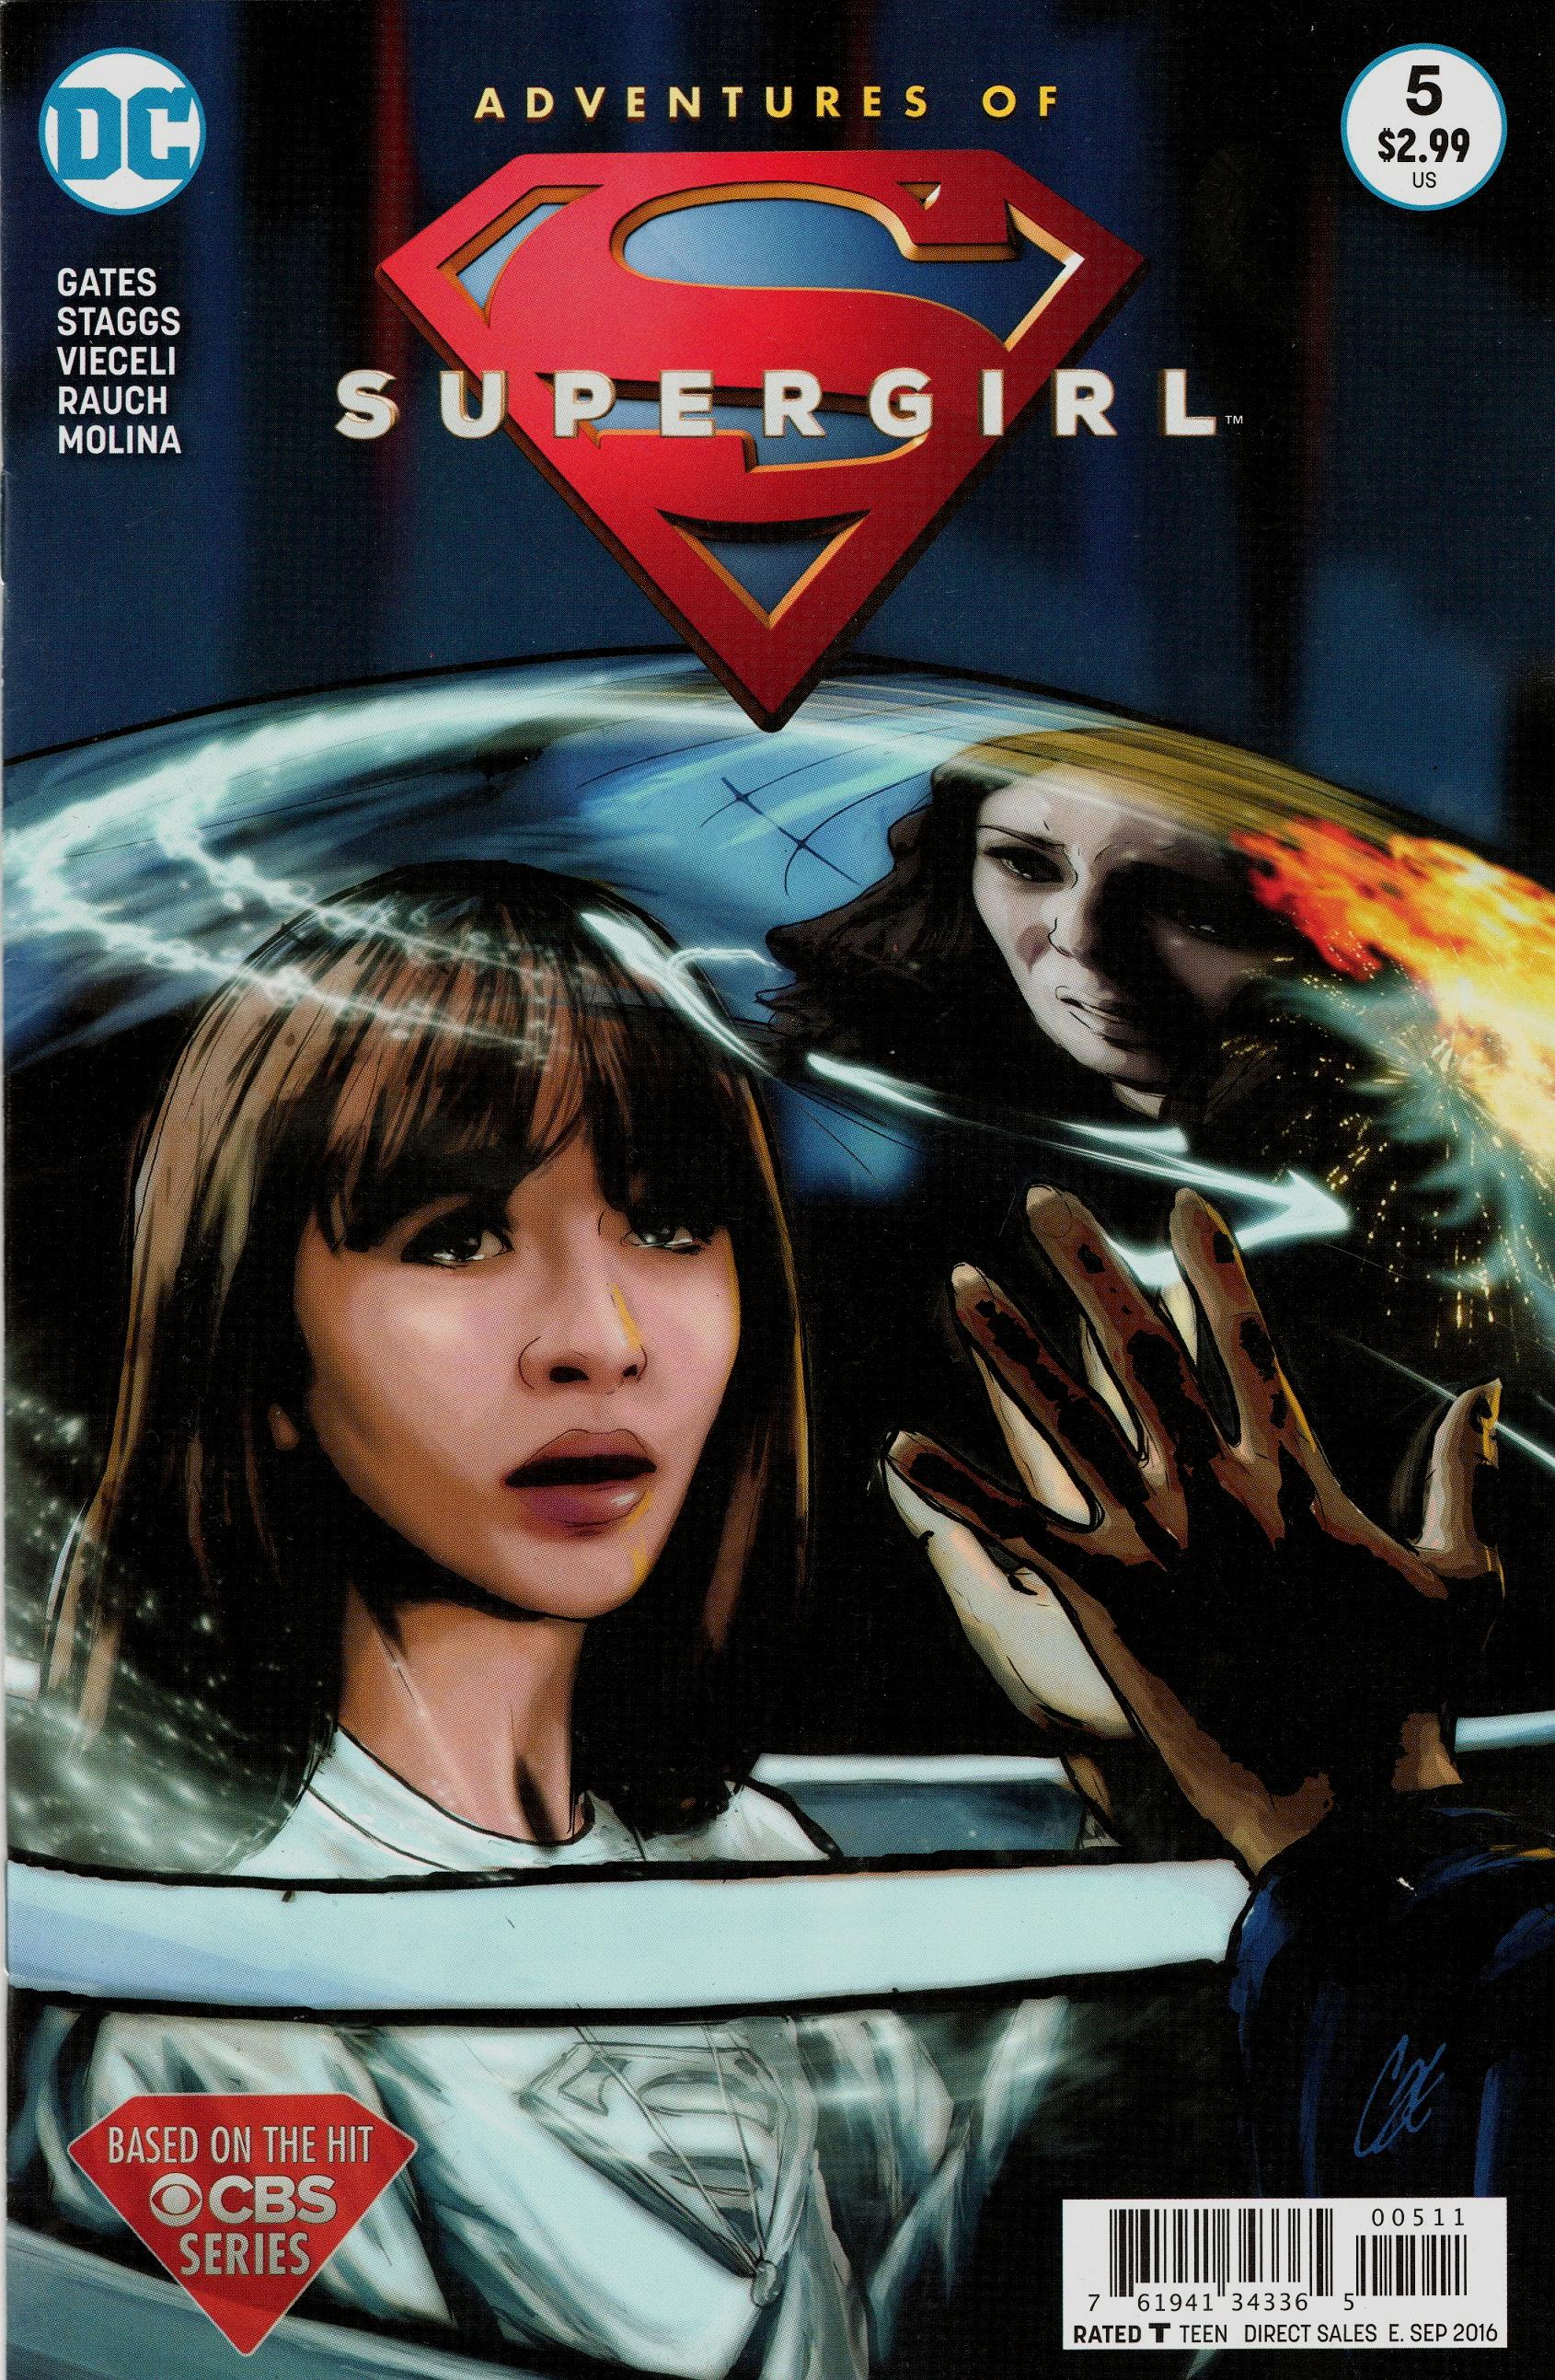 Adventures of Supergirl Vol. 1 #5